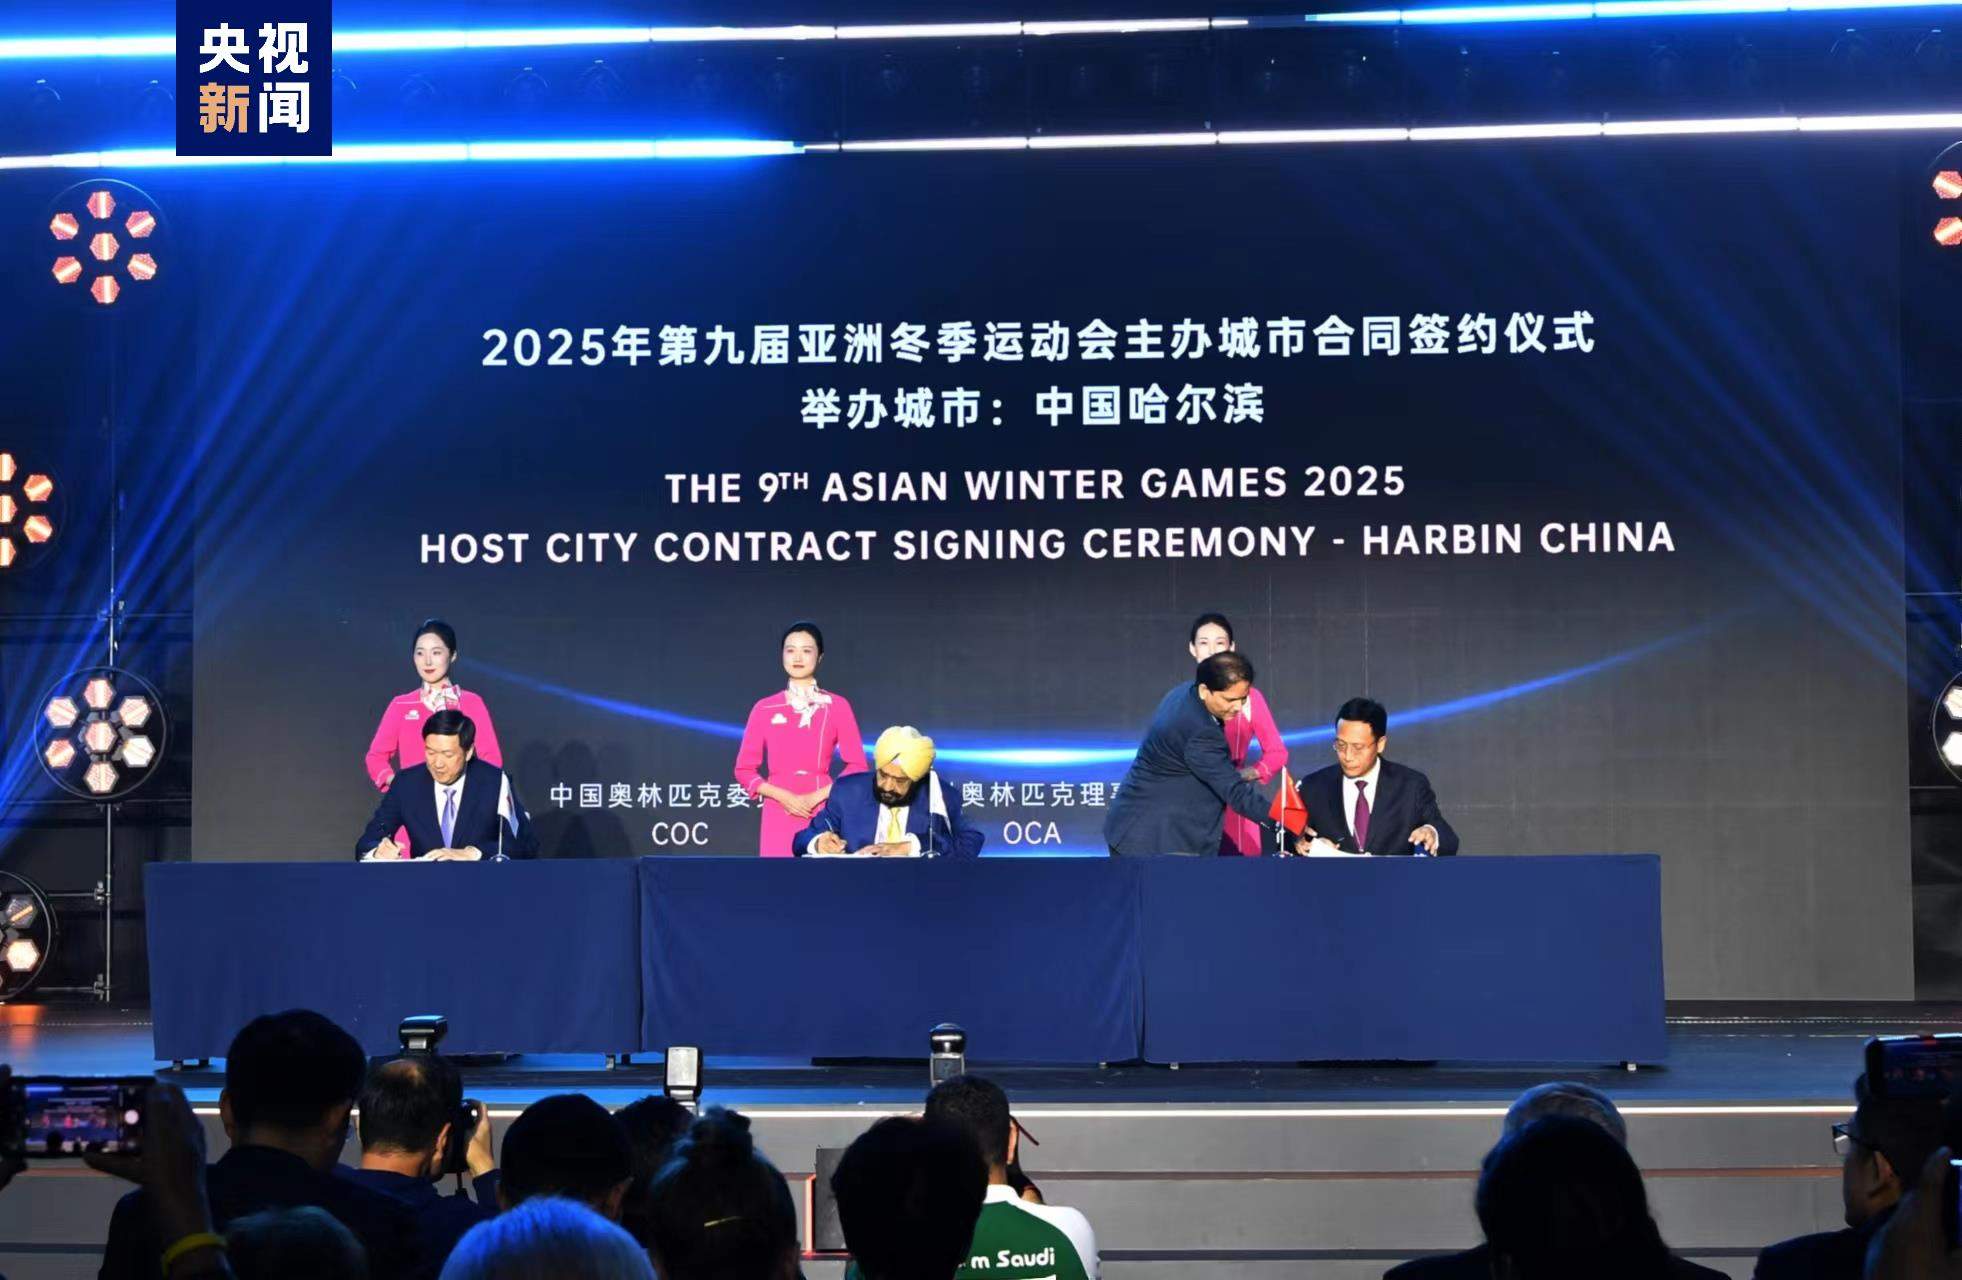 哈尔滨正式订立2025年第9届亚洲冬季运动会主办都邑合同